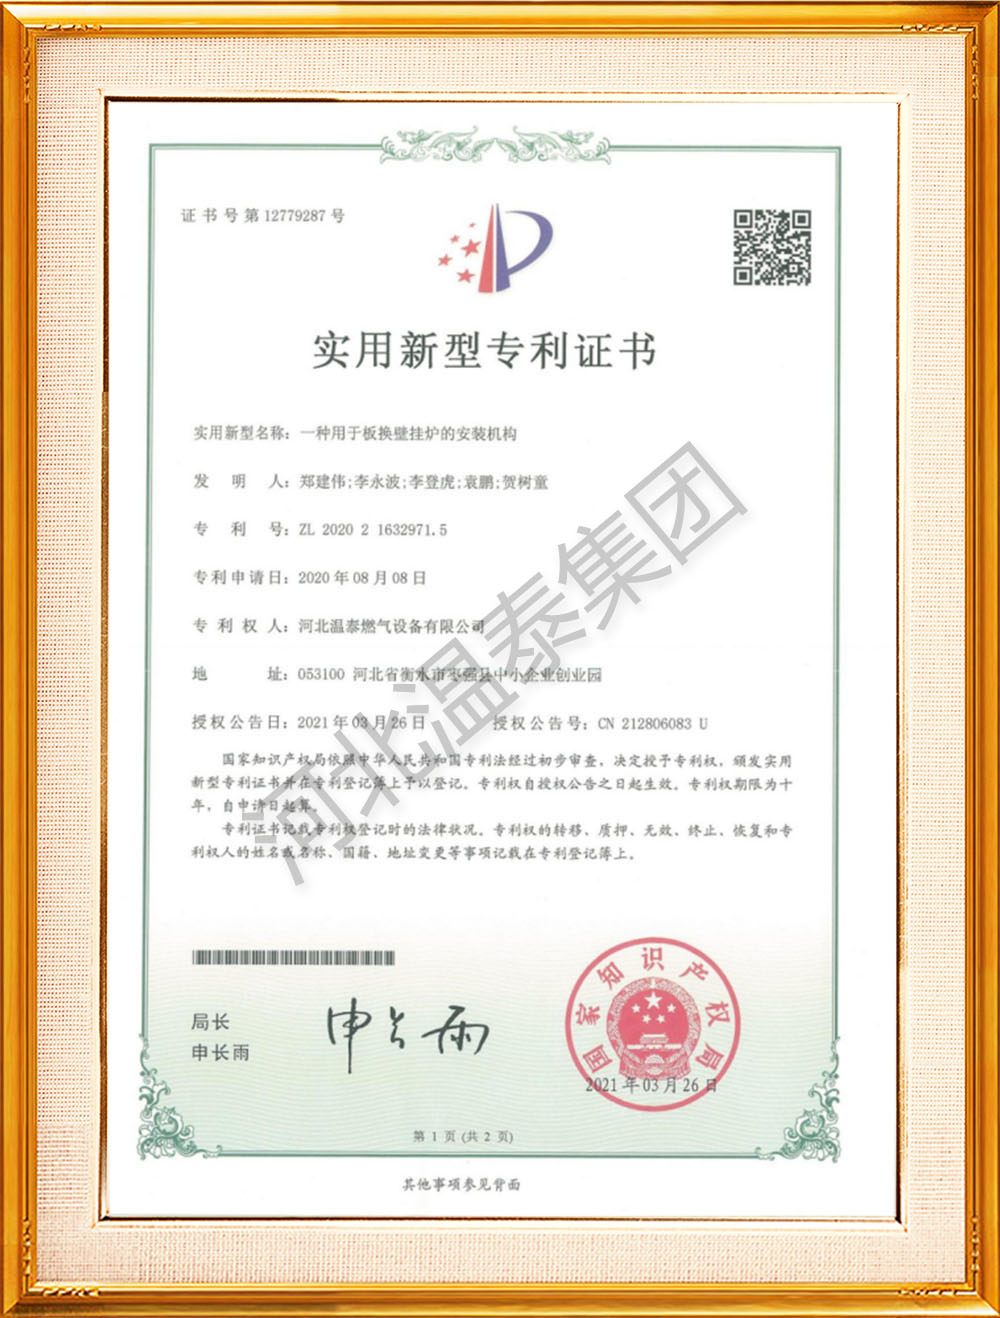 壁挂炉安装机构专利证书